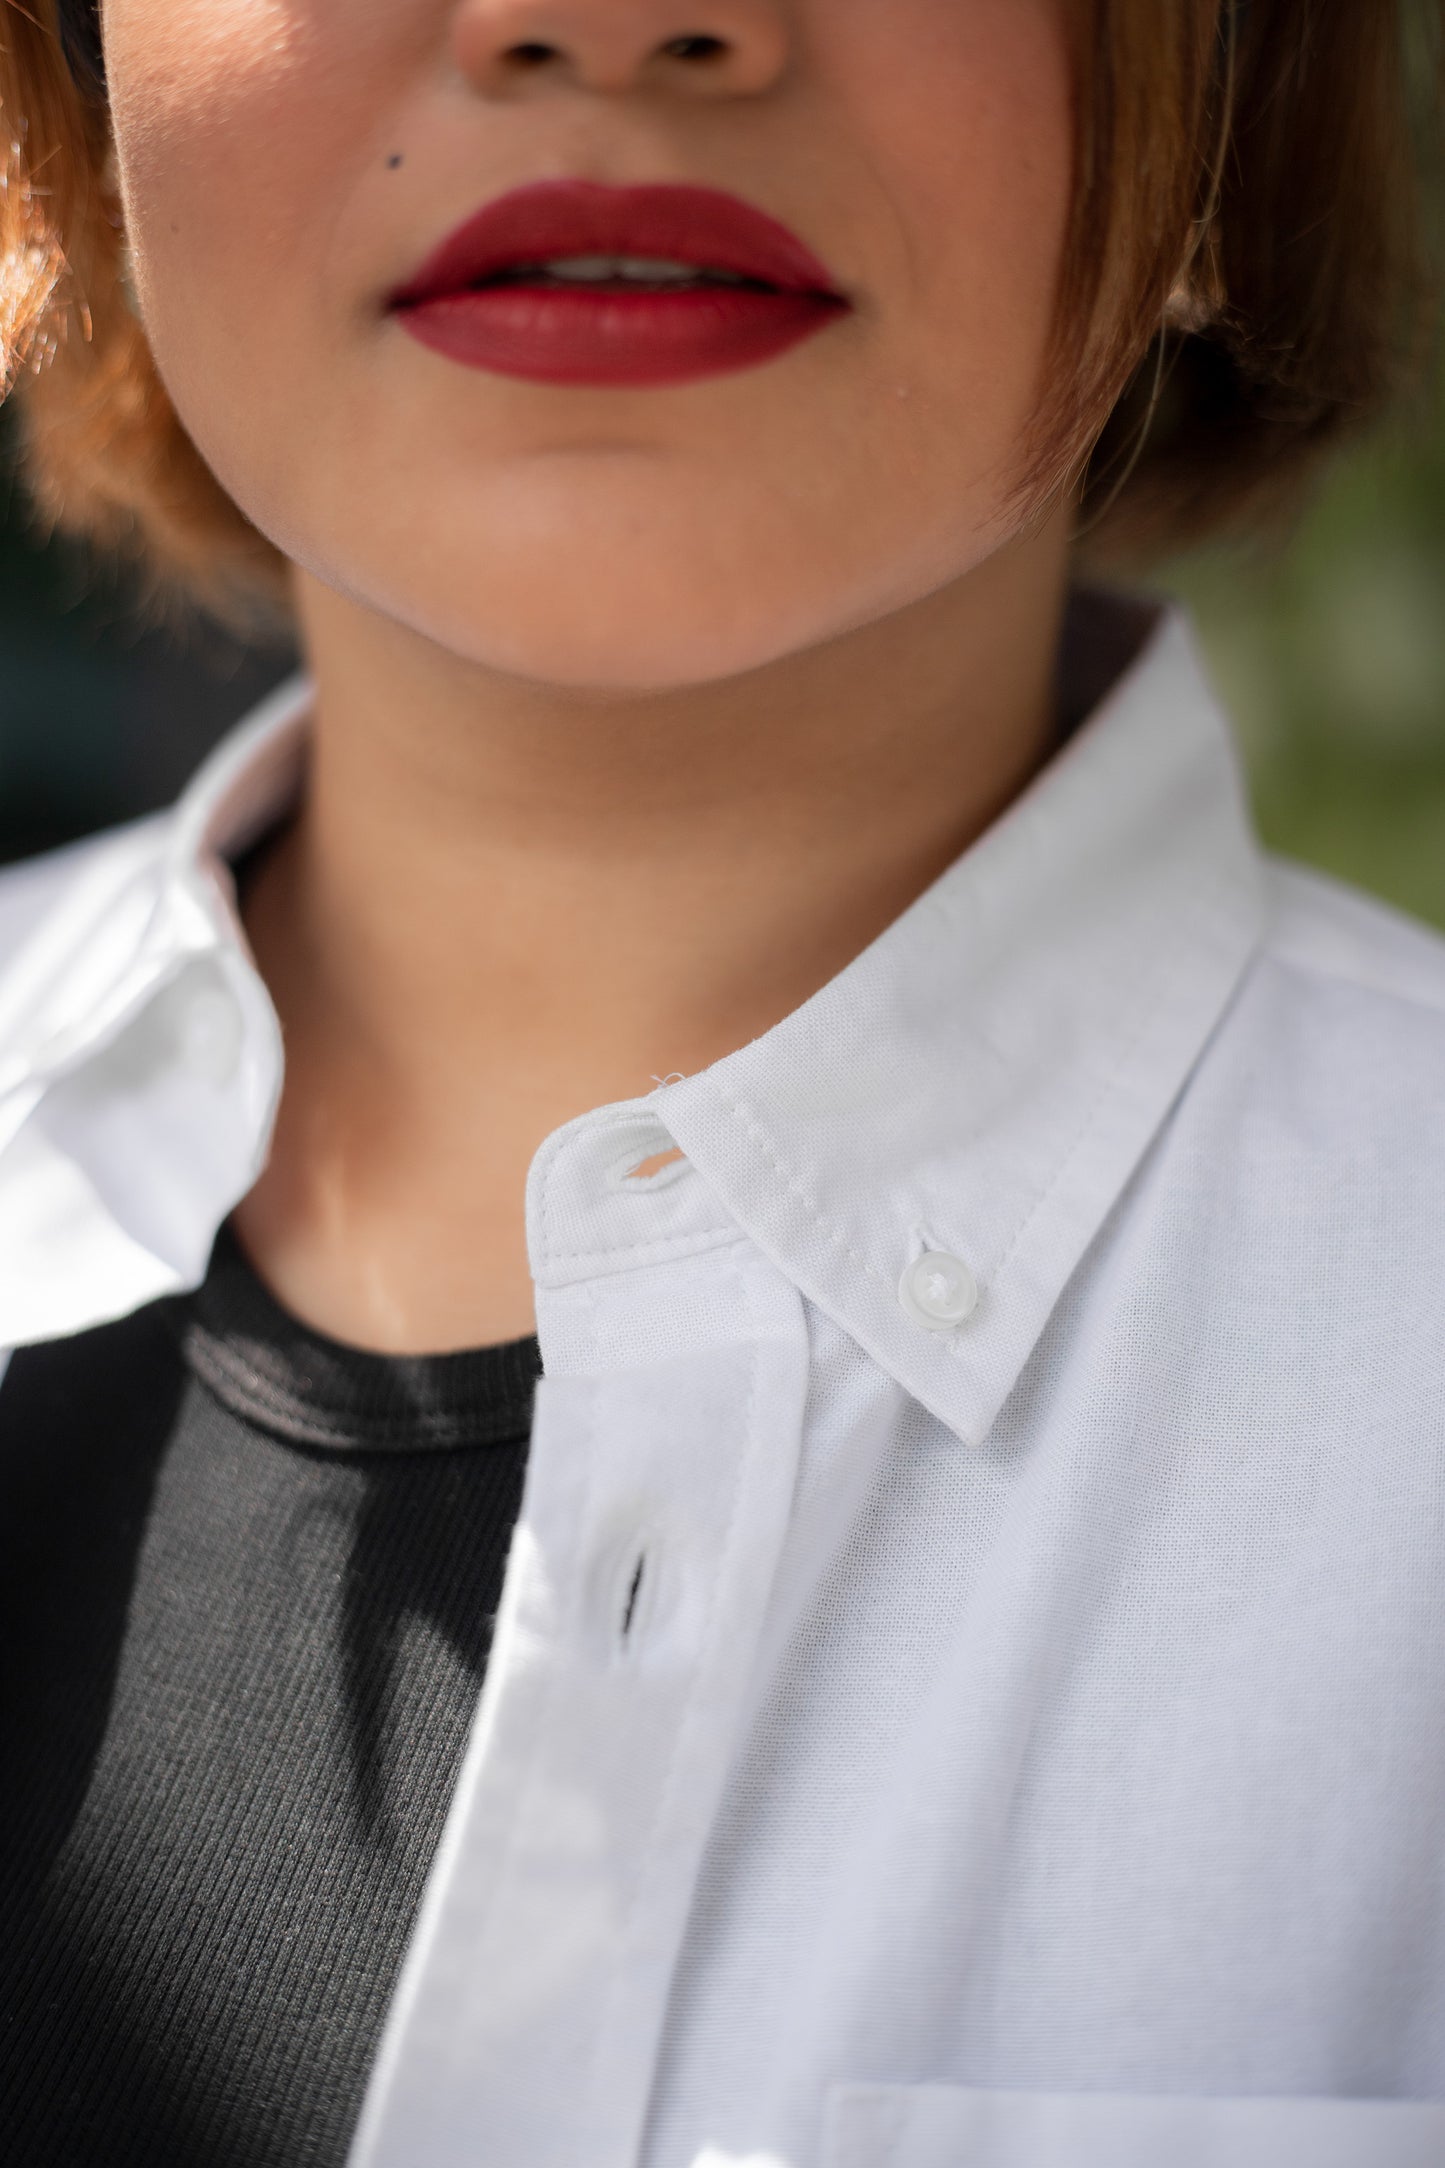 Oxford Shirt - Uninhibited - Unisex - White